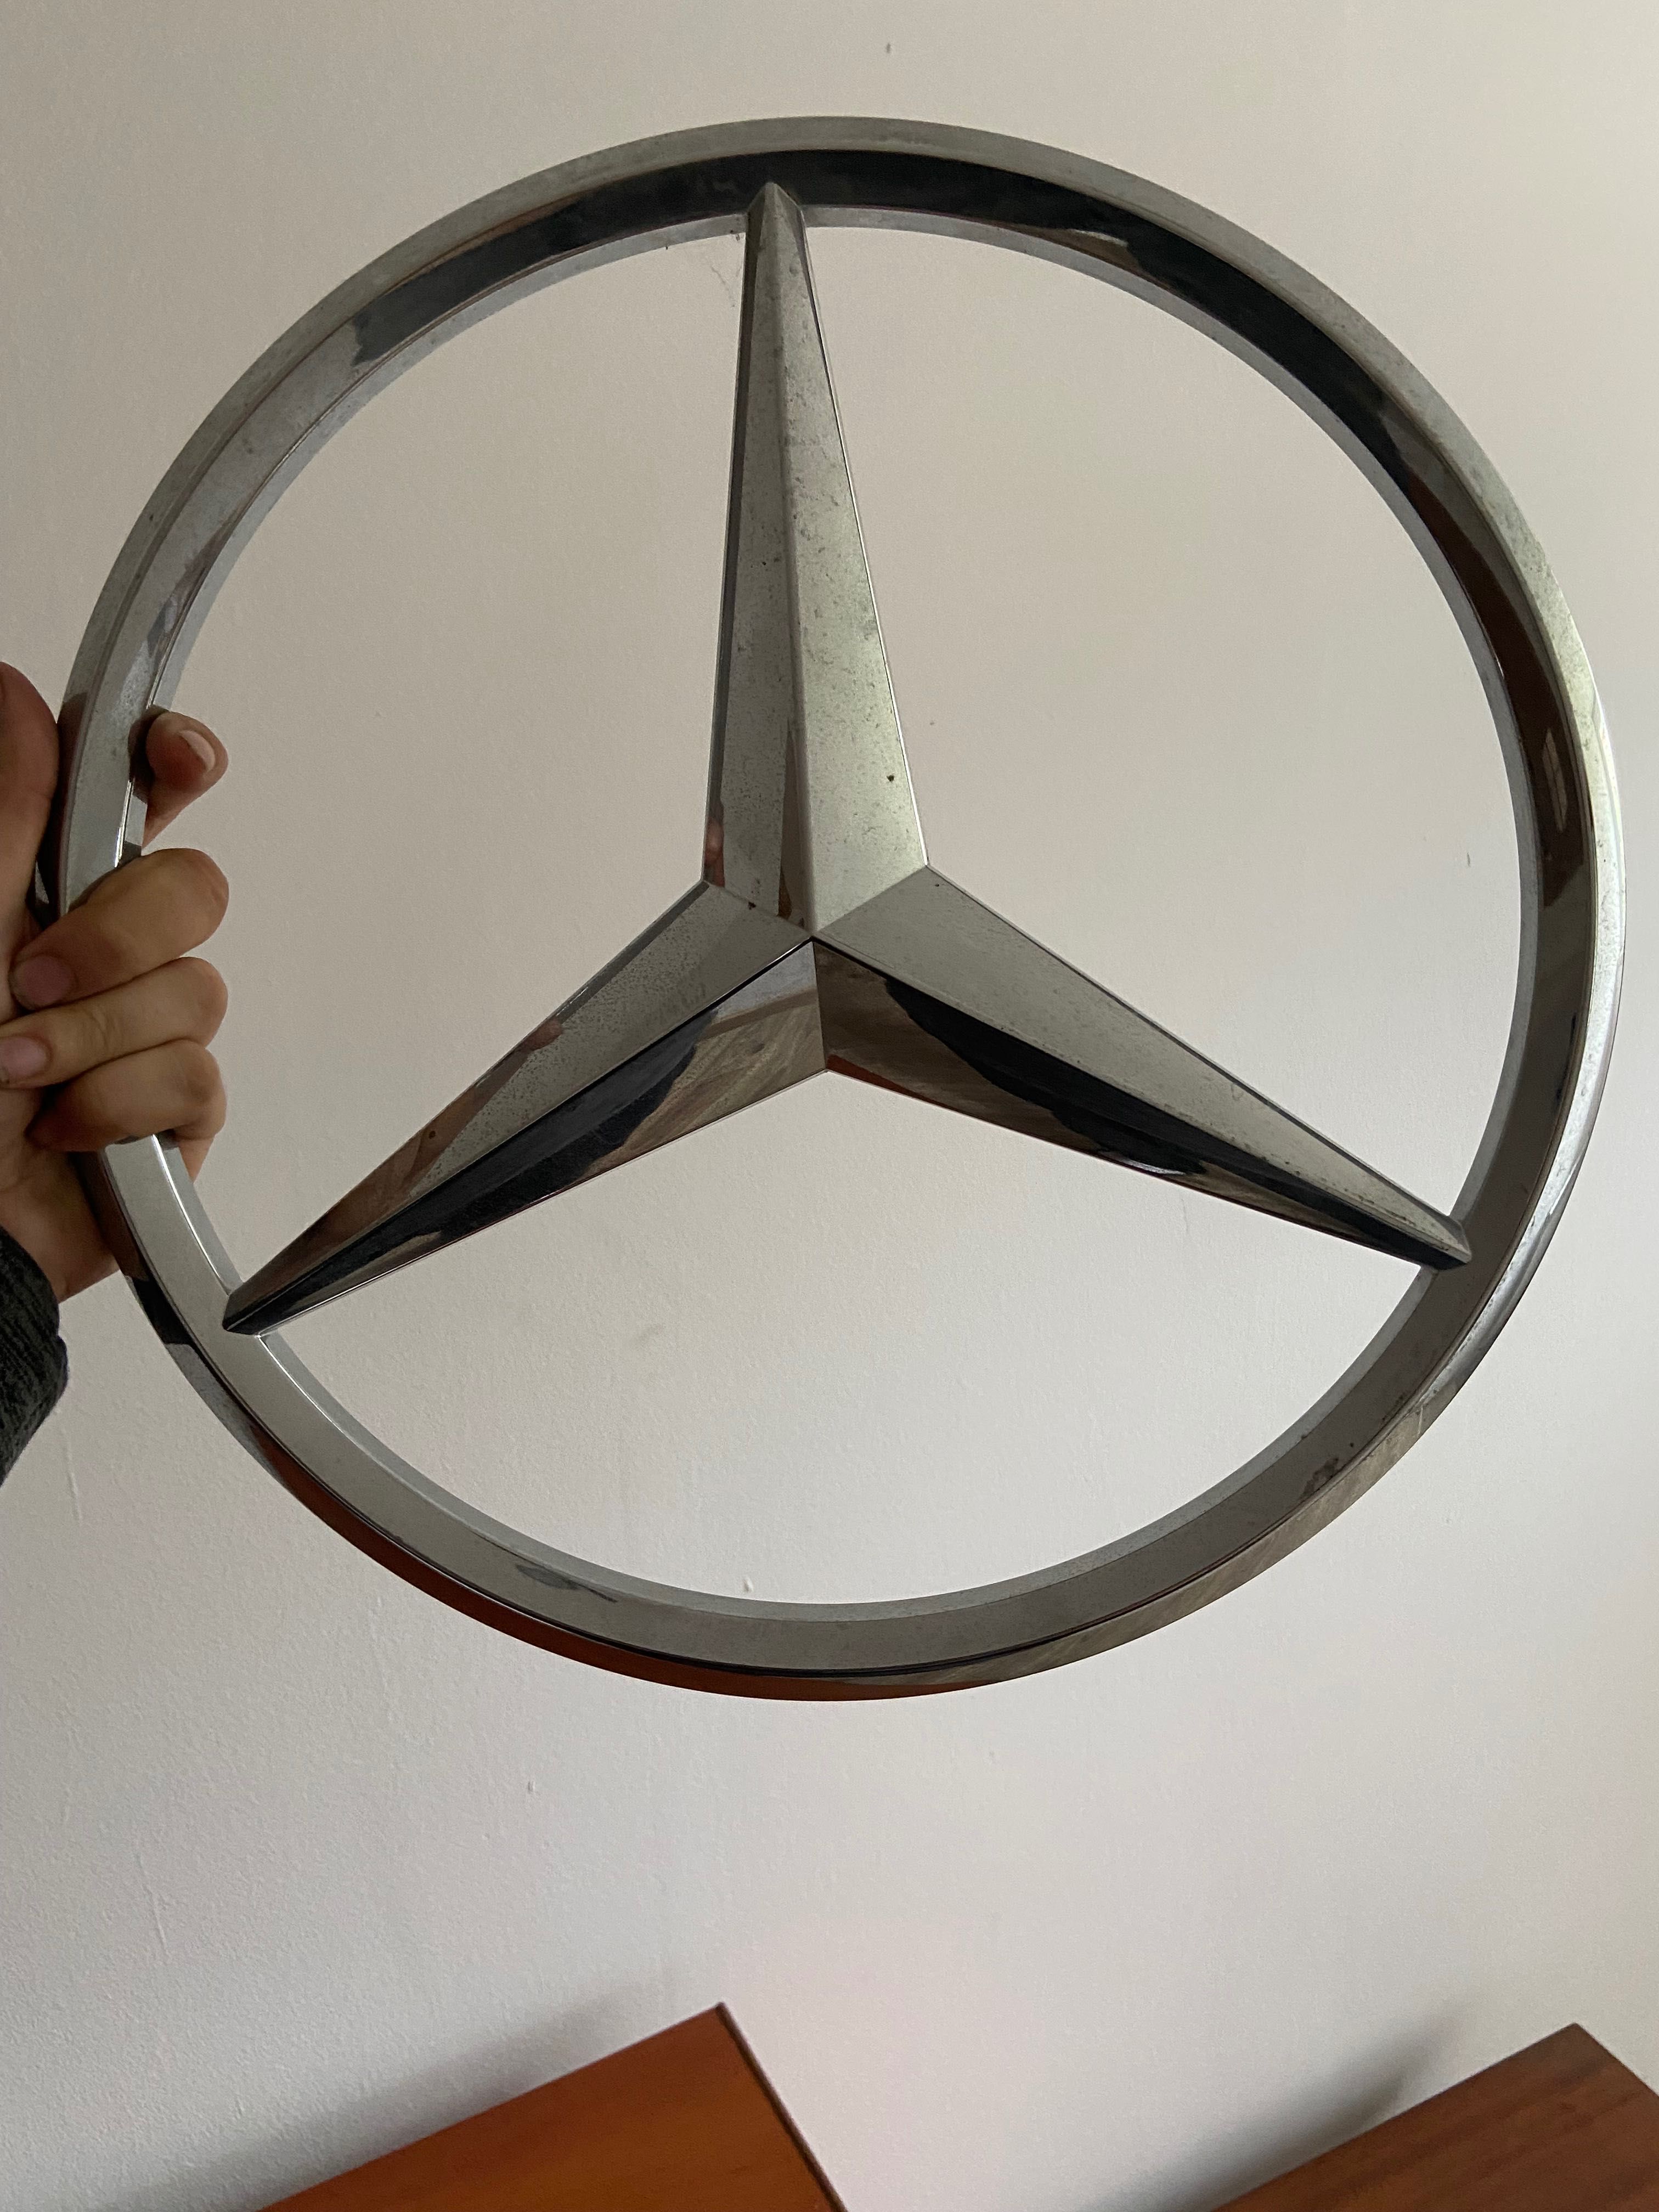 Emblemat Mercedes 36,5 cm średnica